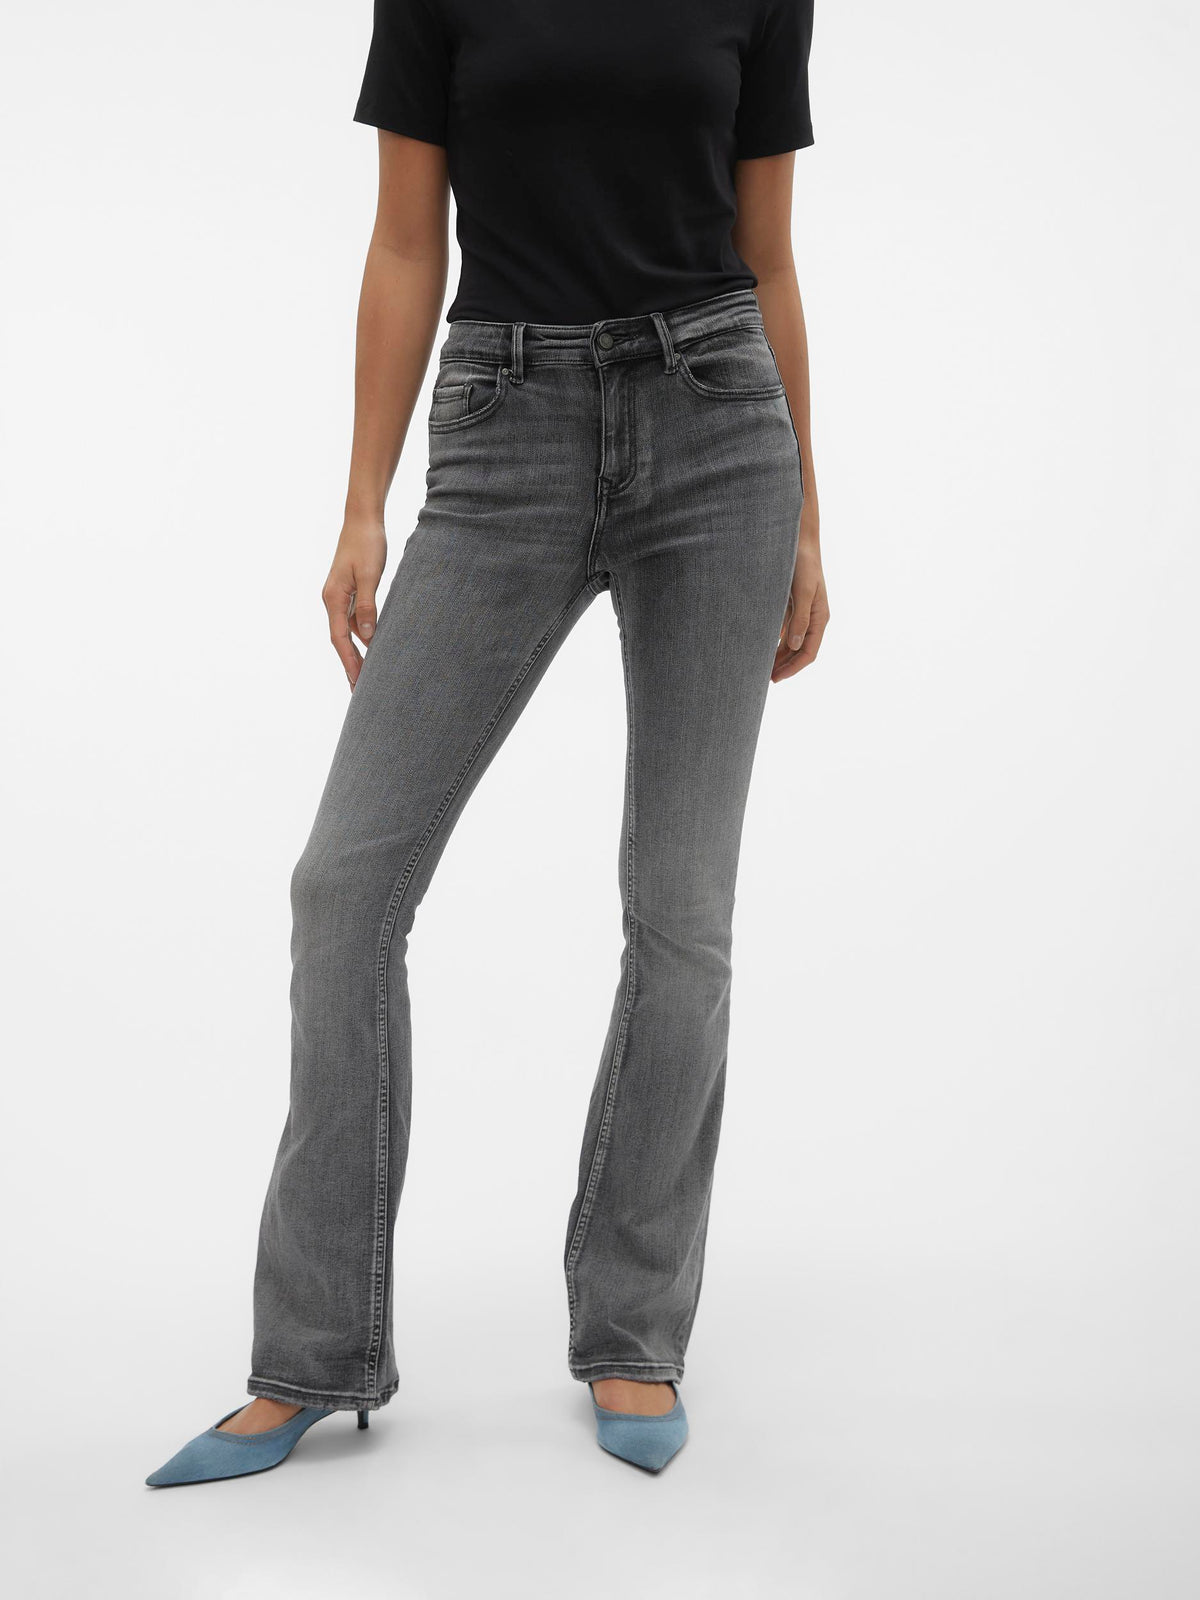 מכנס ג'ינס פדלפון / אורך ממוצע